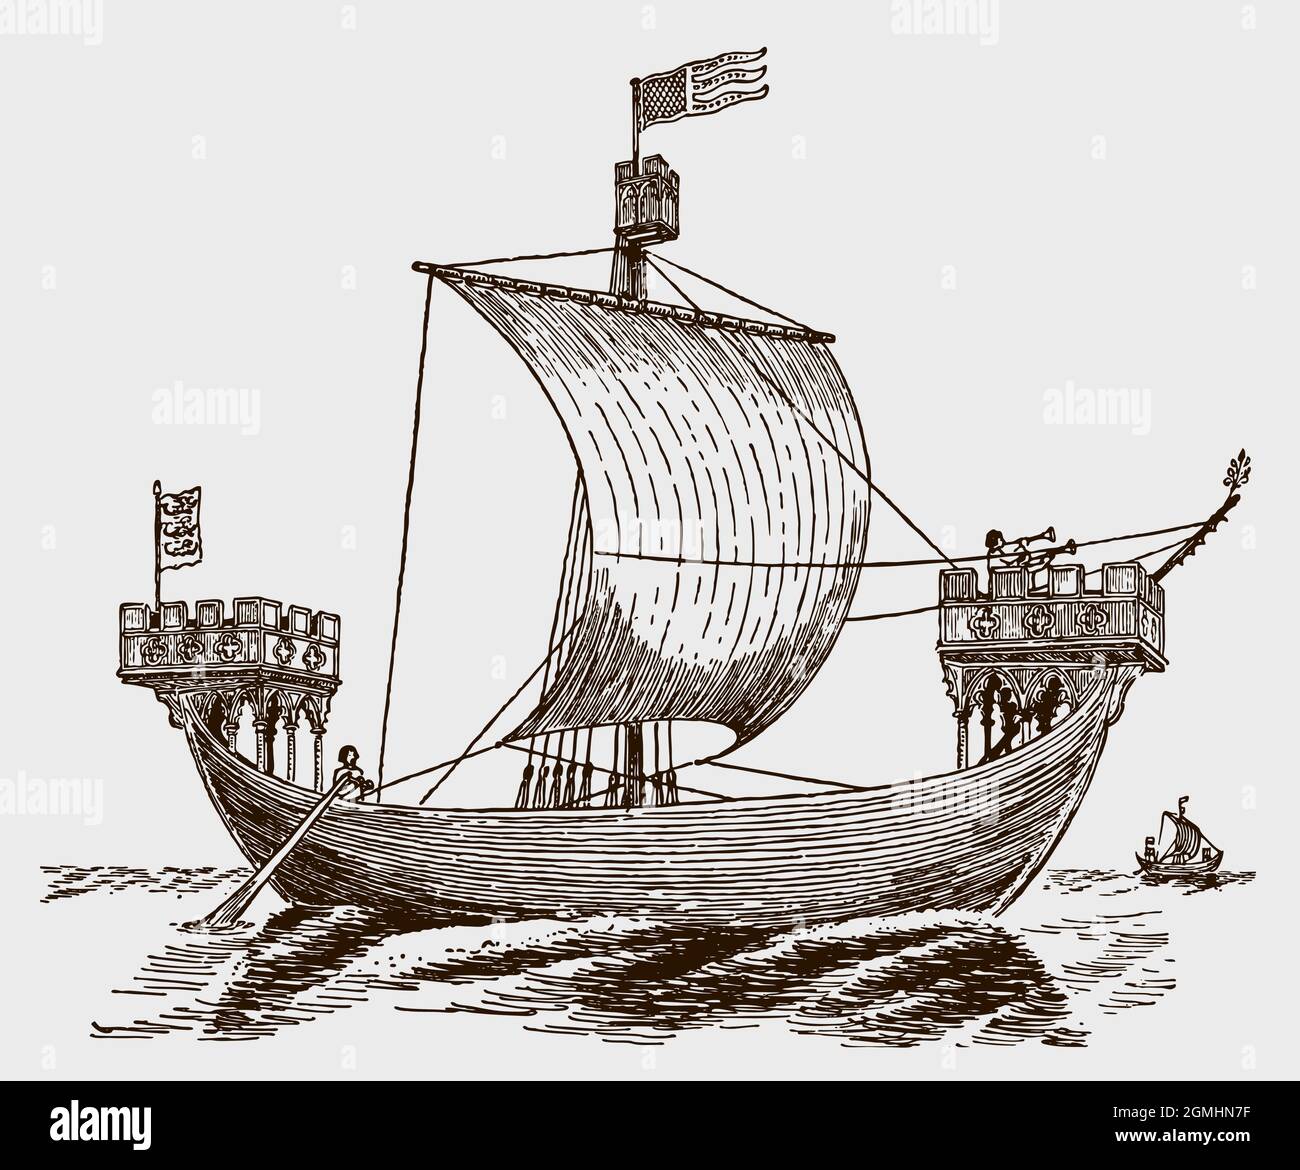 Bateau à voile croisé médiéval du XIIIe siècle en mer Illustration de Vecteur